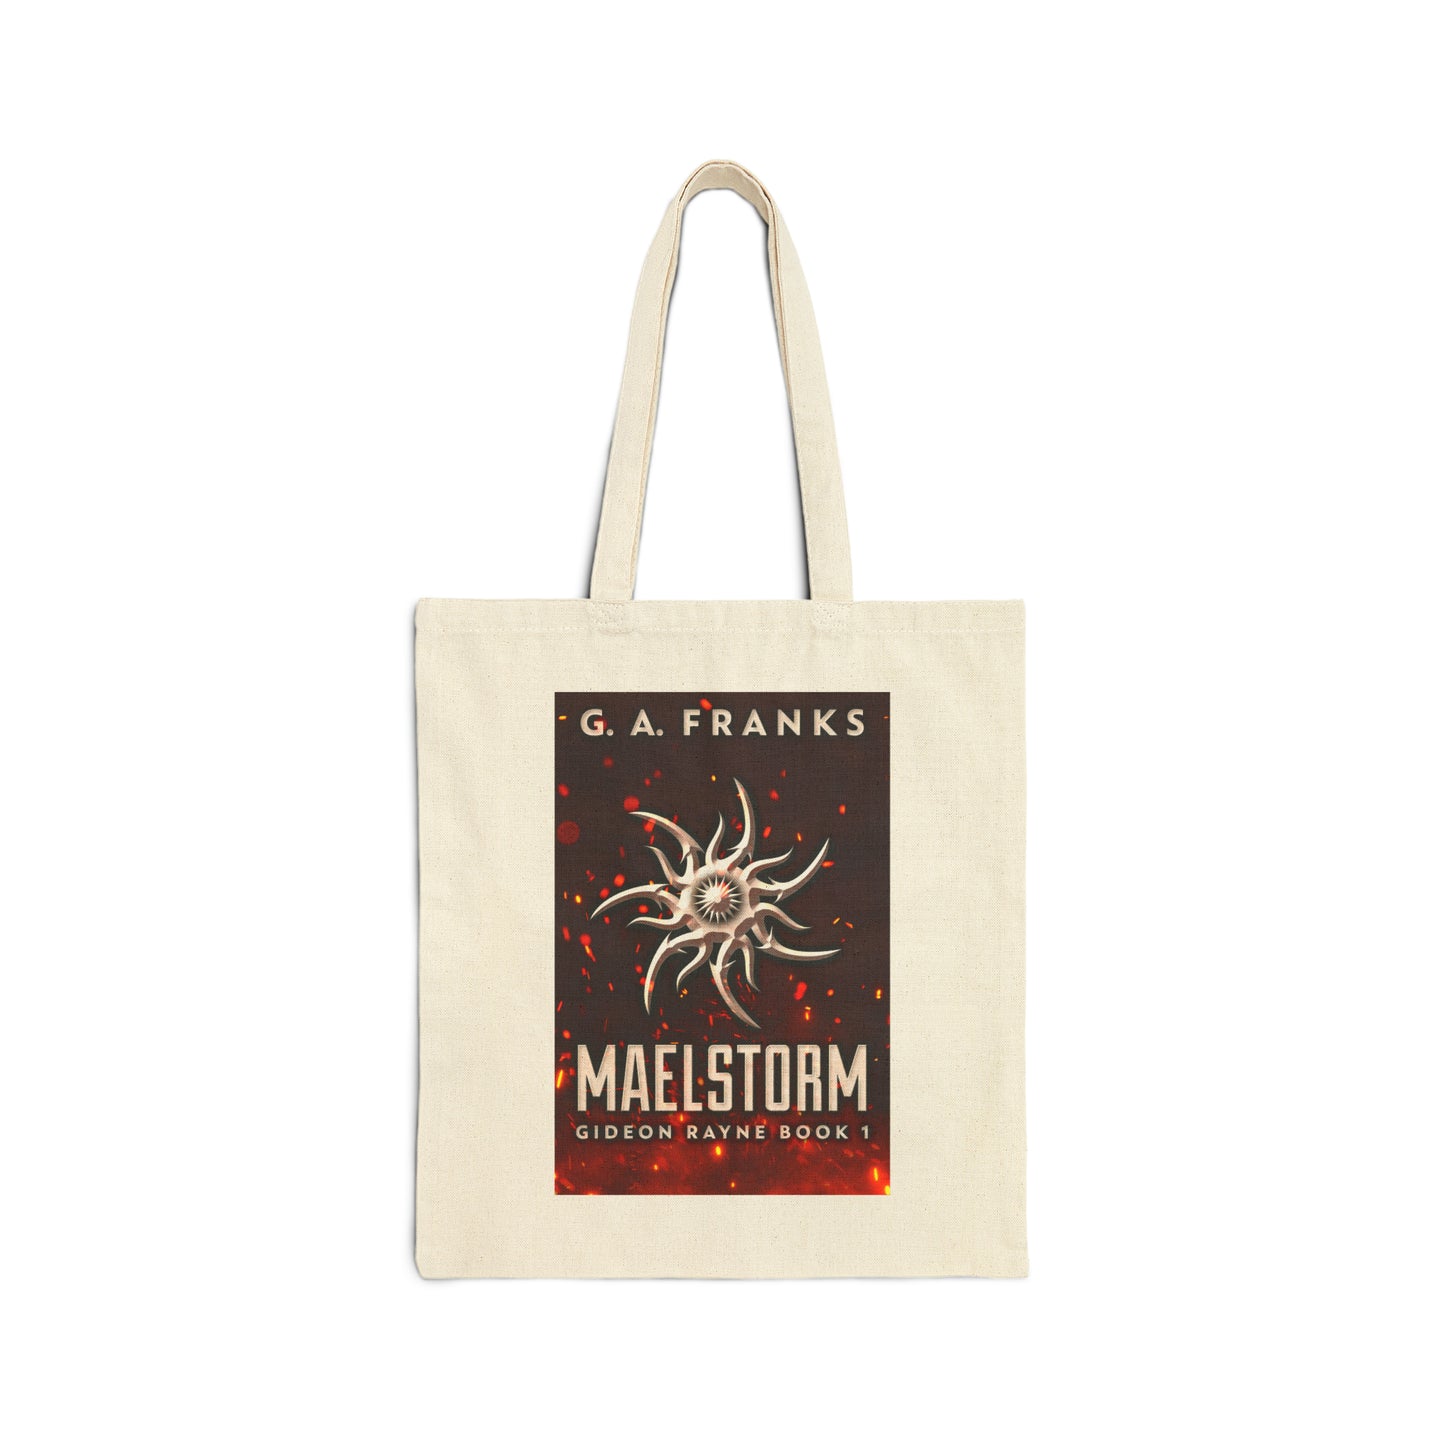 Maelstorm - Cotton Canvas Tote Bag